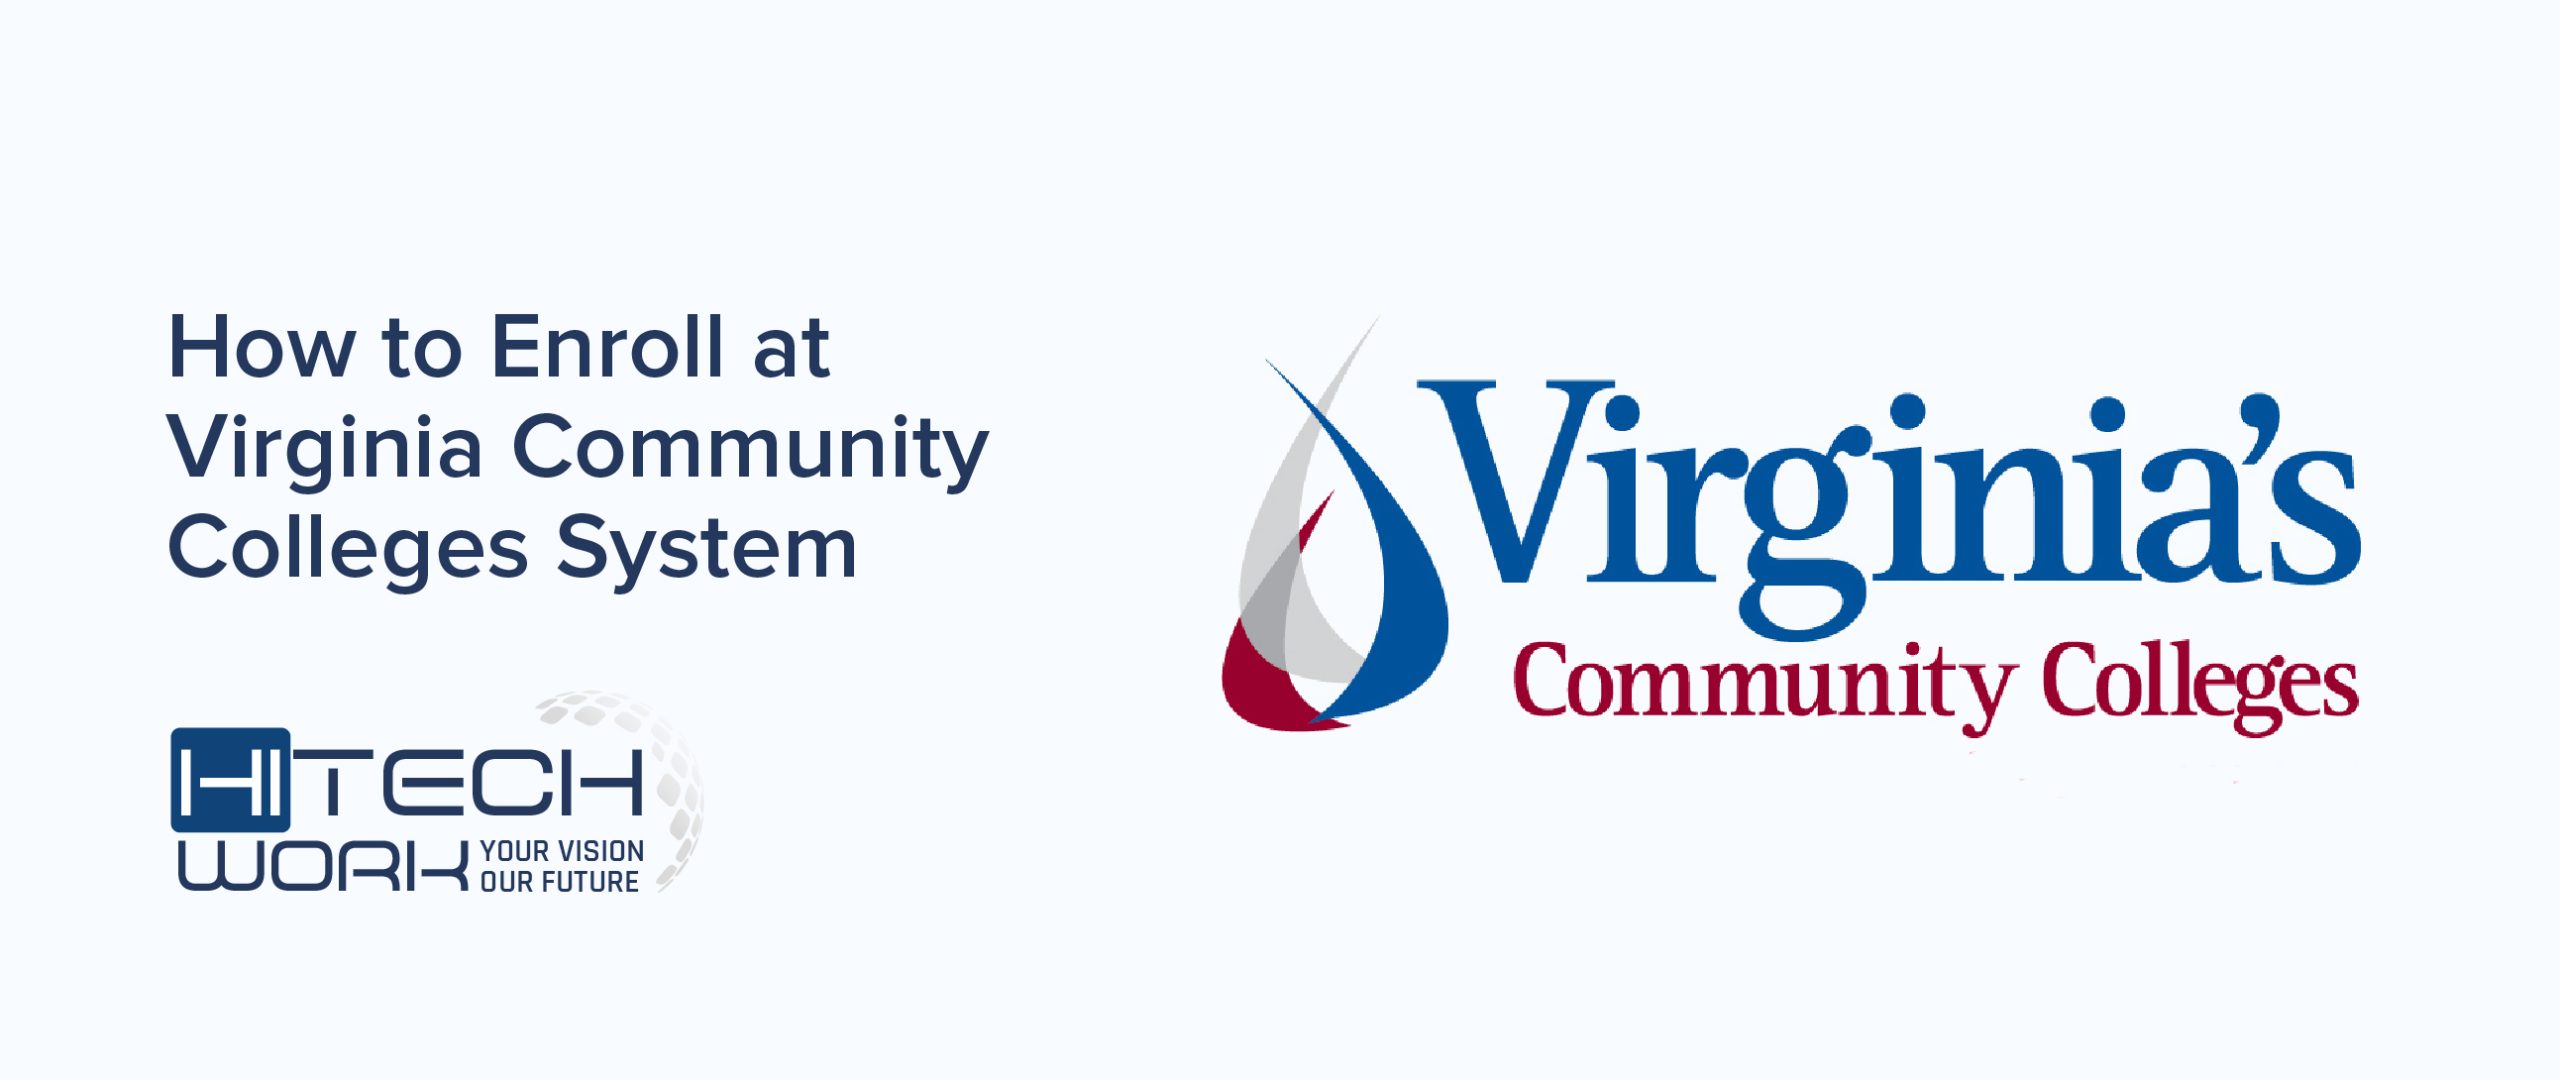 Virginia's community colleges